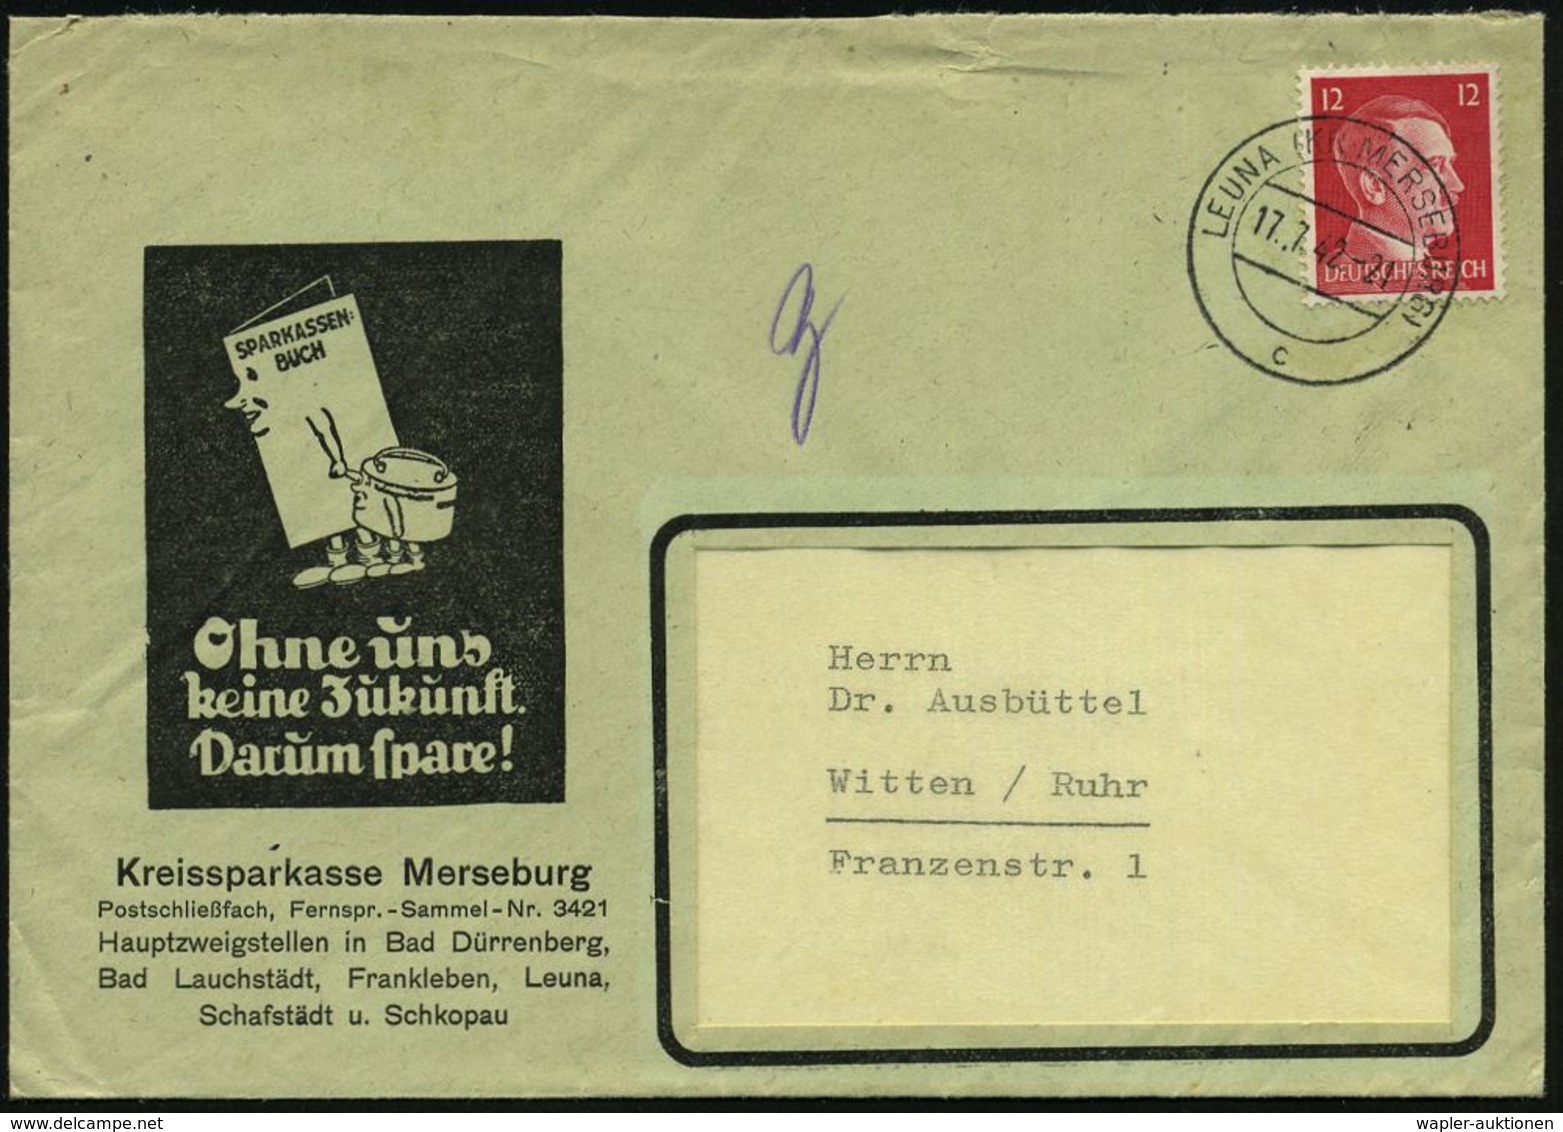 LEUNA (KR MERSEBURG)/ C 1942 (17.7.) 2K Auf Reklame-Bf.: Kreissparkasse Merseburg "Ohne Uns Keine Zukunft..!" (Sparbuch, - Chemie